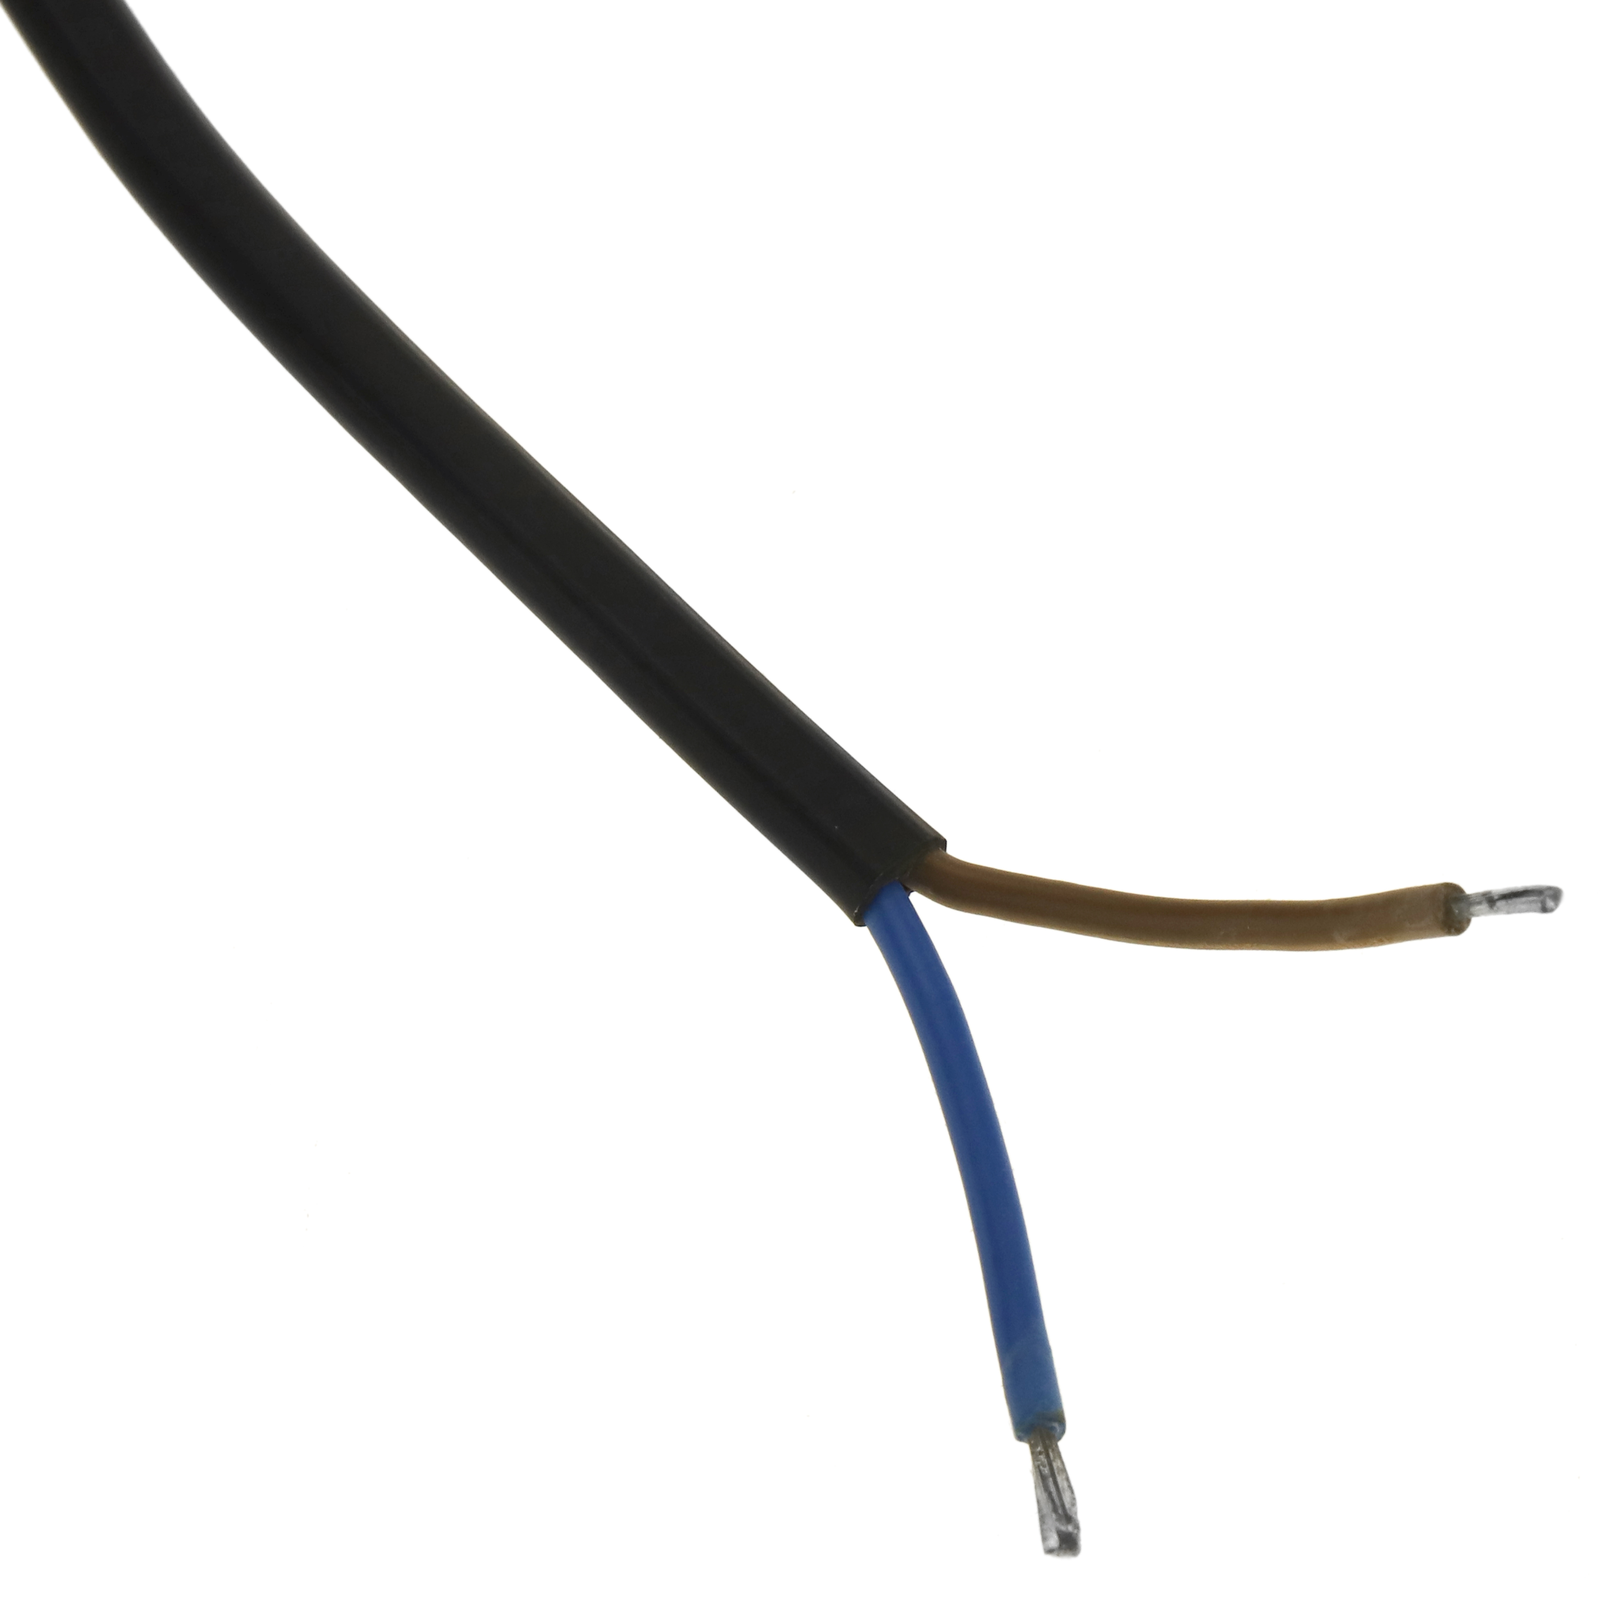 Cable de alimentación eléctrico H05VV-F 5m de enchufe schuko recto a bornes  3x1.50mm² - Cablematic